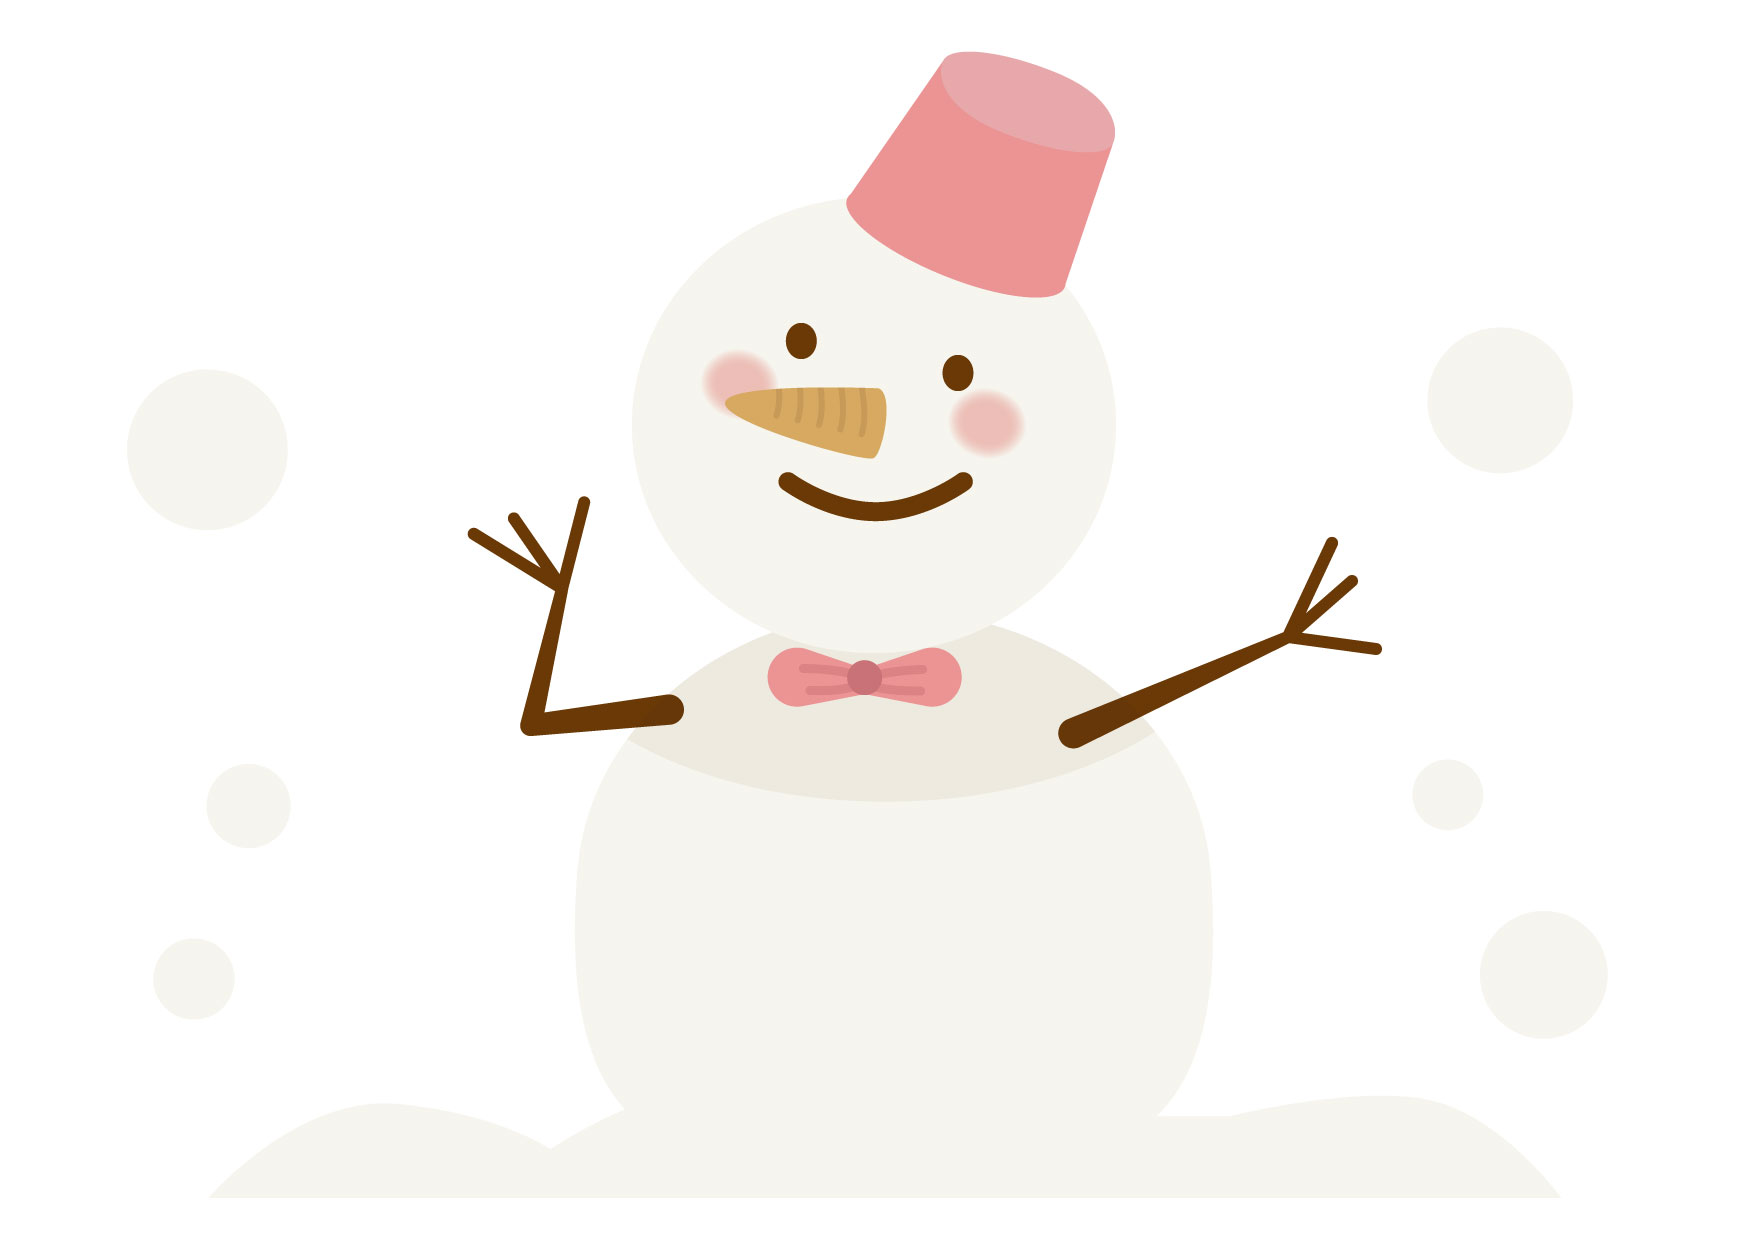 可愛いイラスト無料 雪だるま Free Illustration Snowman 公式 イラスト素材サイト イラストダウンロード